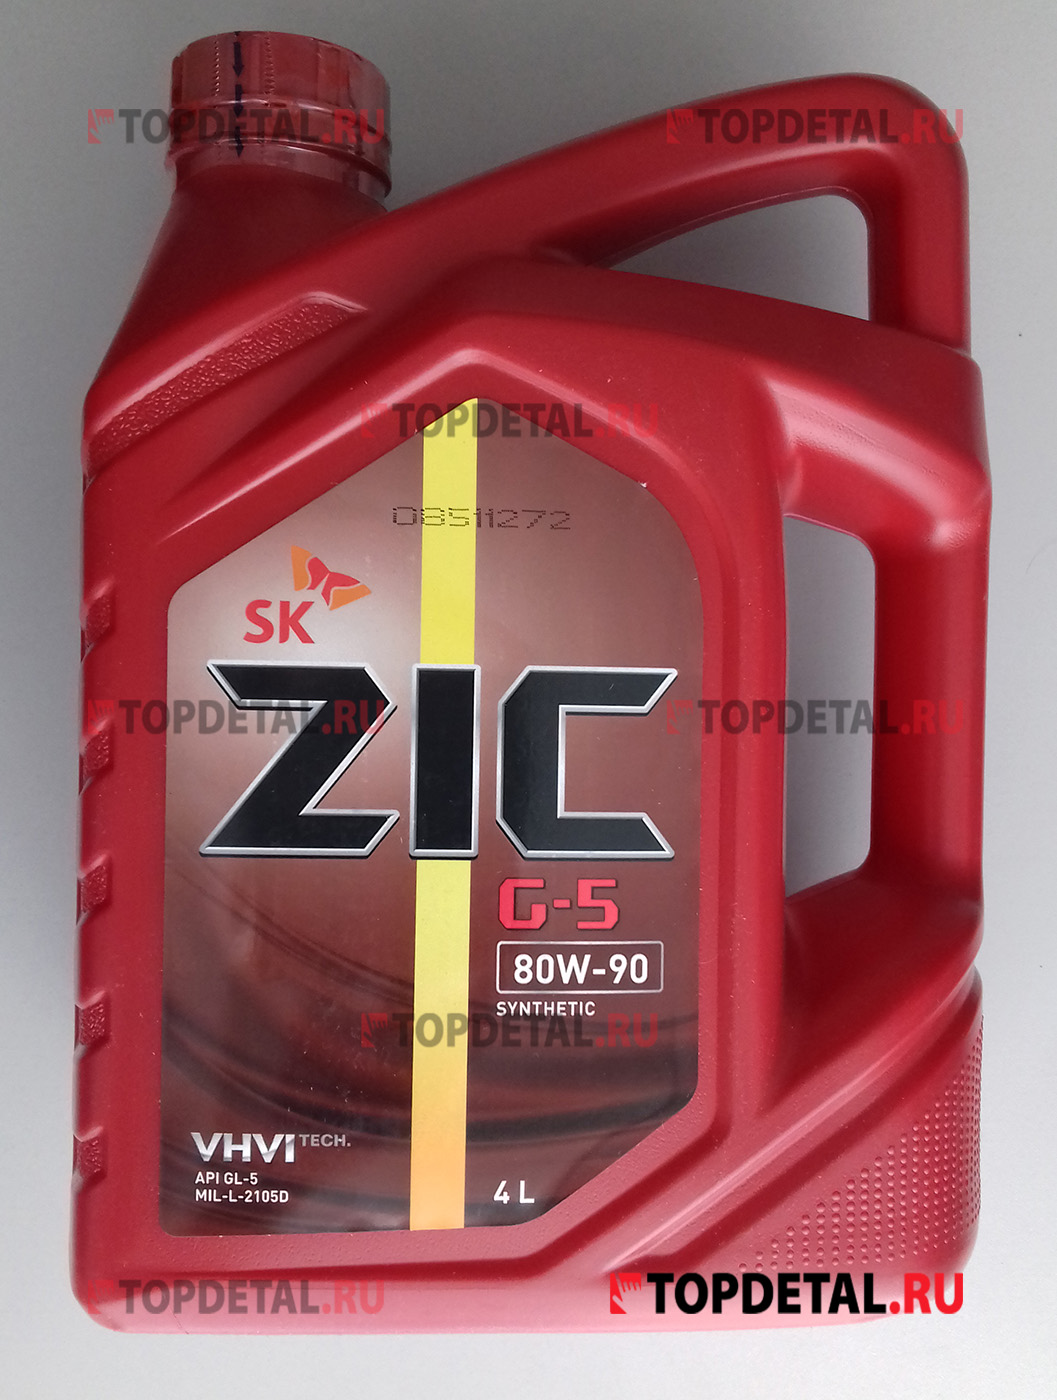 Трансмиссионные масла zic синтетика. ZIC GFT 75w-90 4л. Масло трансмиссионное ZIC G-5 80w-90 (4л). ZIC G-F Top 75w-90. Масло 75w90 синтетика ZIC.